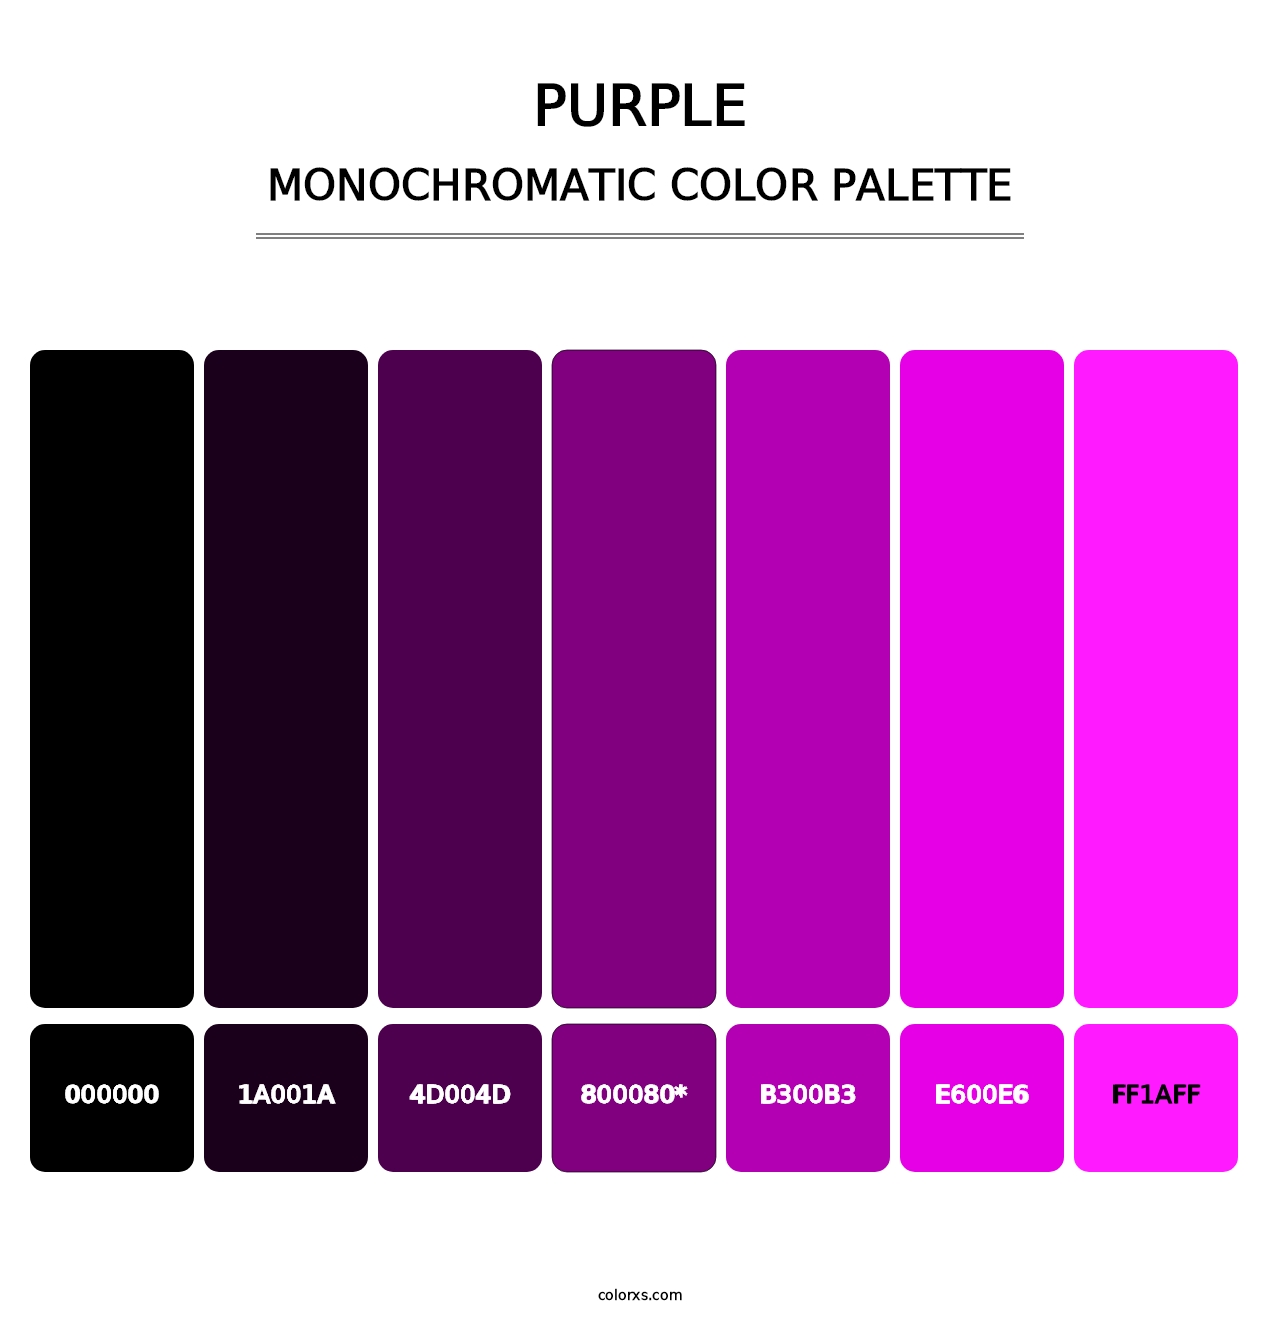 Purple - Monochromatic Color Palette